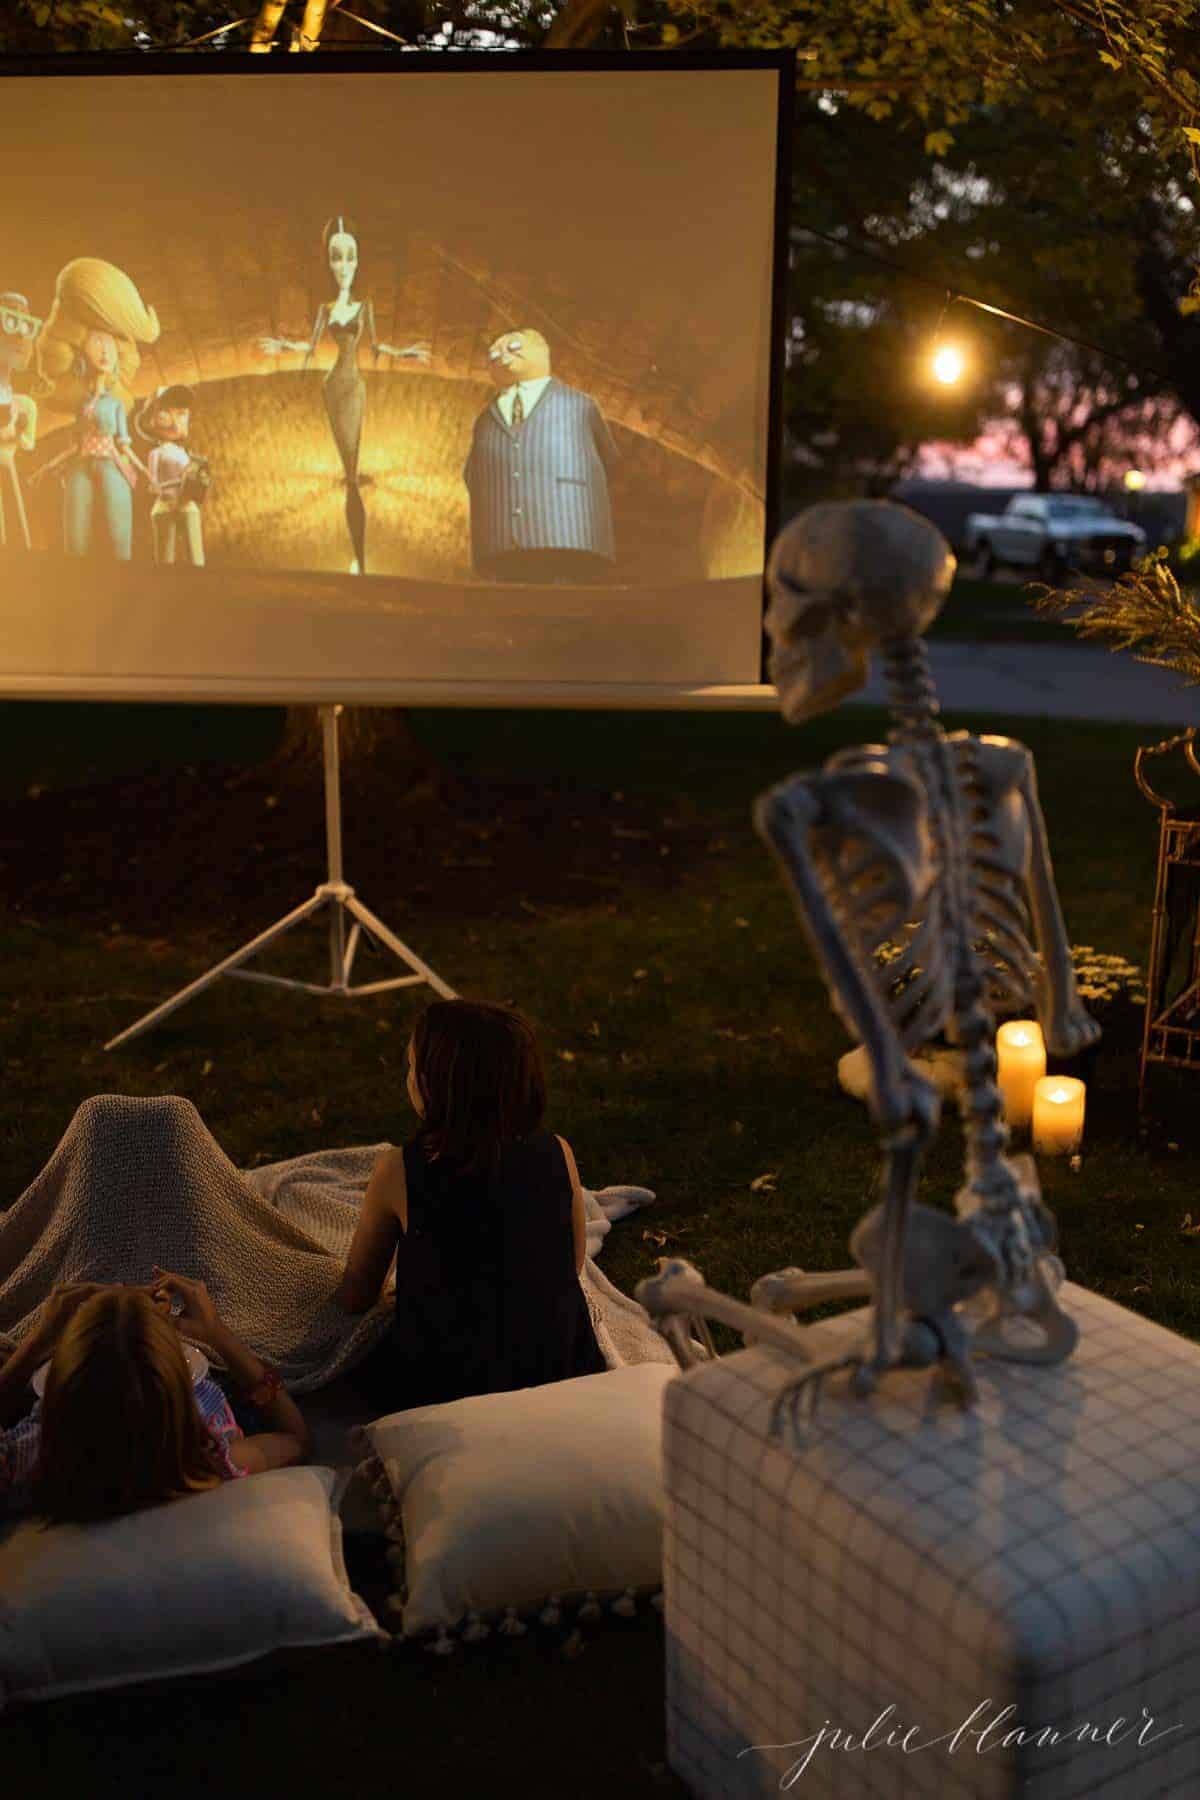 万圣节前夕在院子里布置的户外电影，有骷髅、蜡烛和装饰品。